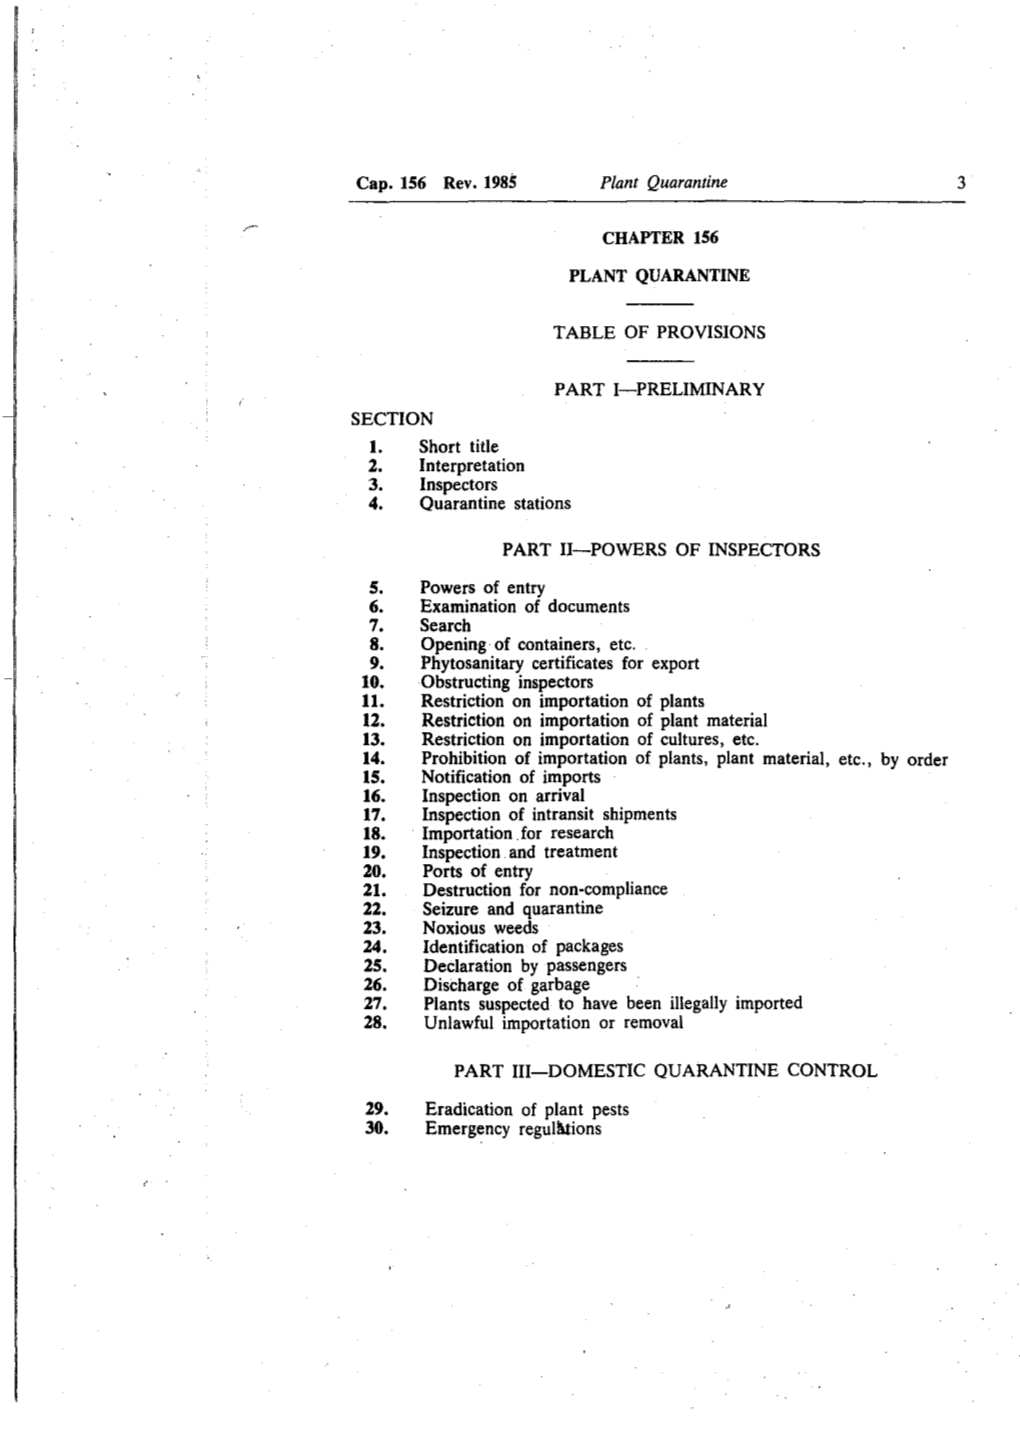 Cap. 156 Rev. 1985 SECTION Short Title 2. Interpretation 3. Inspectors